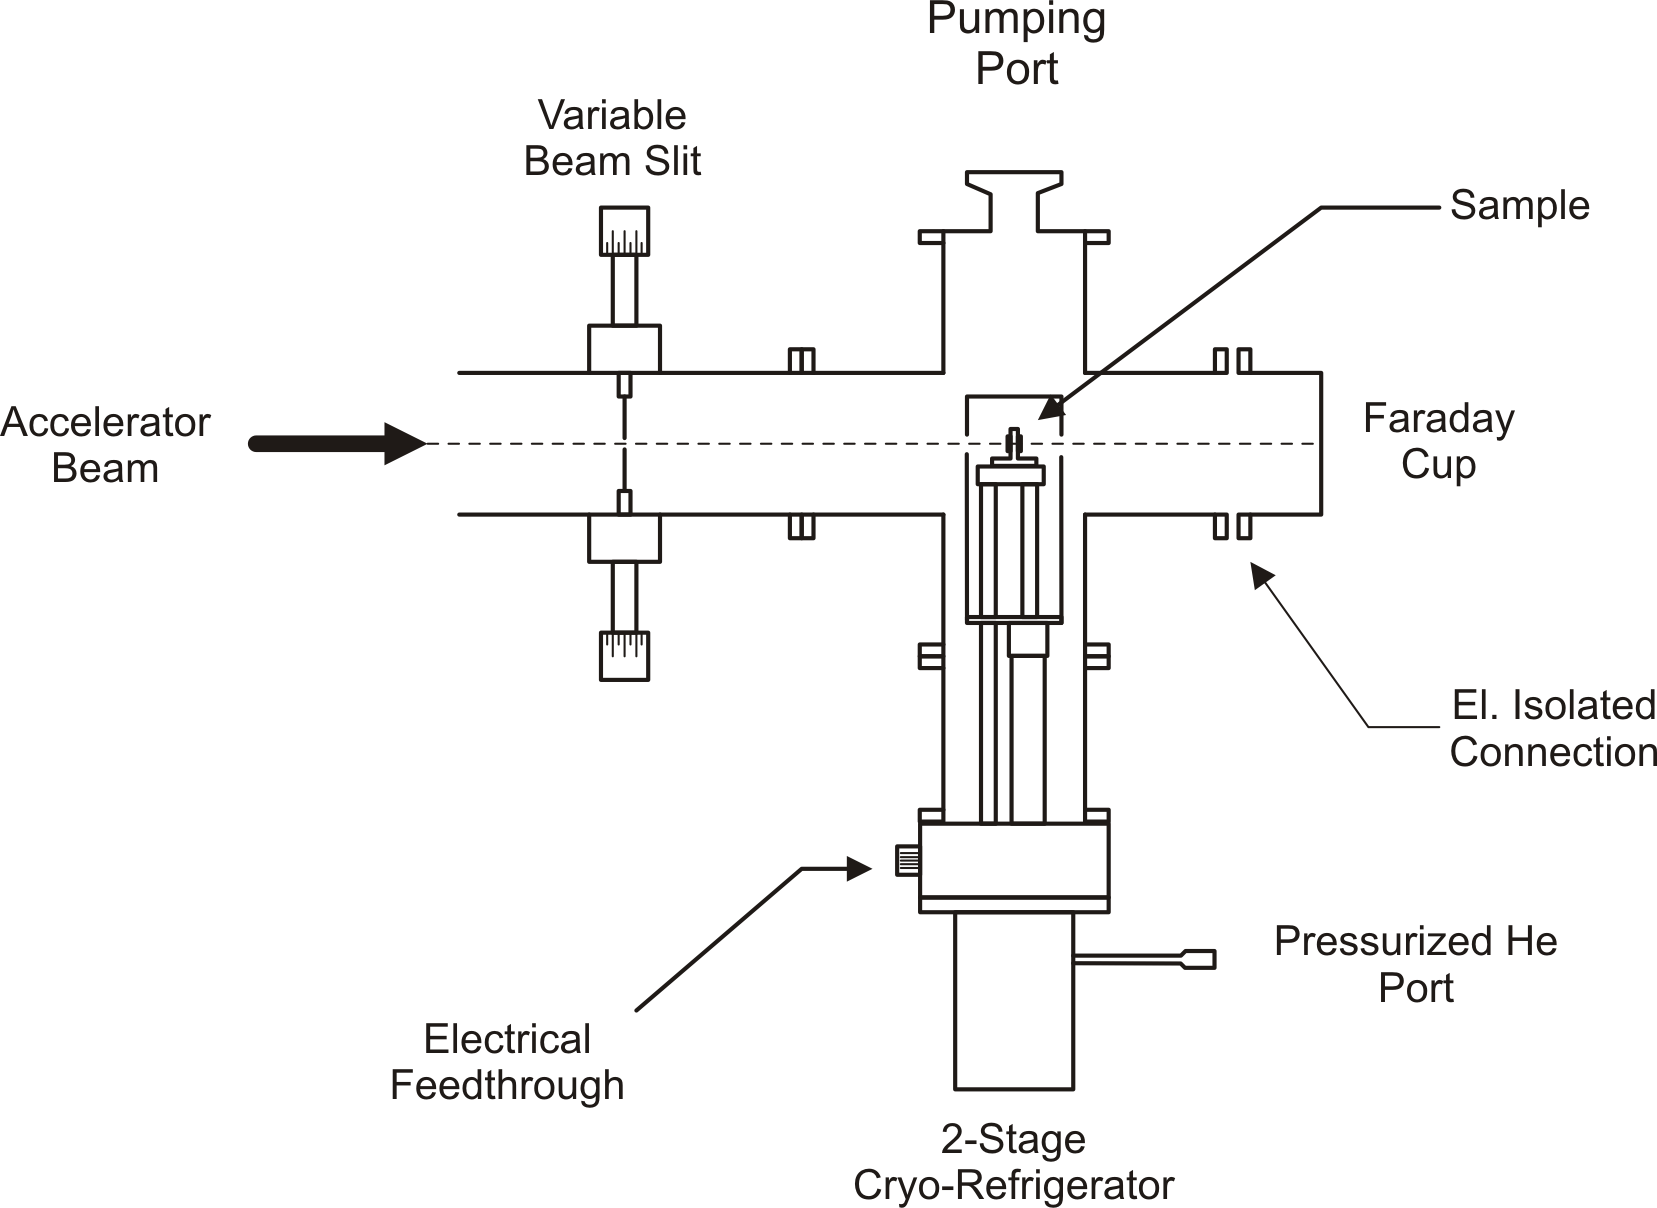 IR^2 schematic